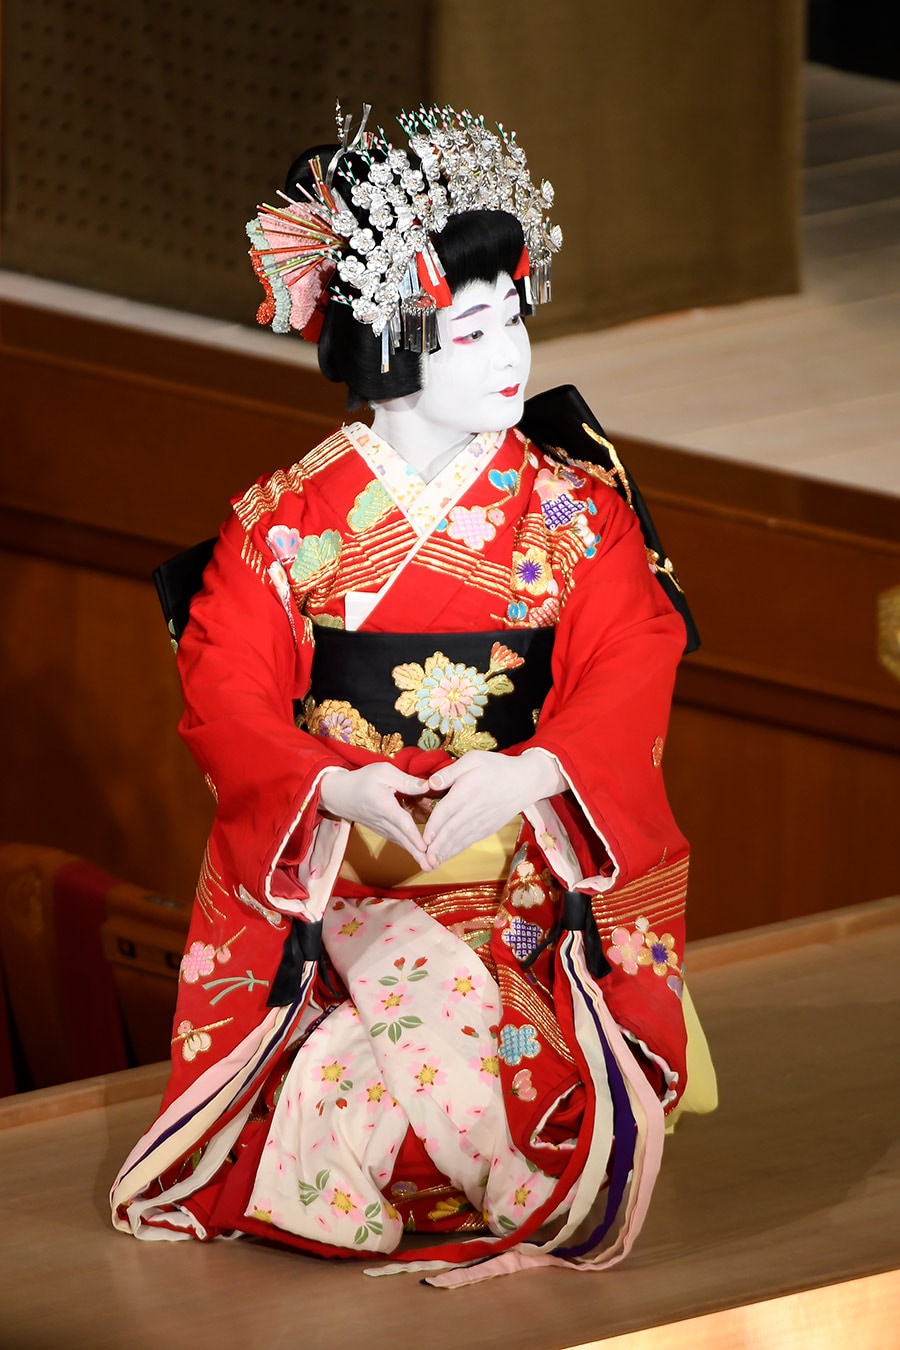 2021年3月歌舞伎座『戻駕色相肩』で禿たよりを演じる莟玉さん。©松竹